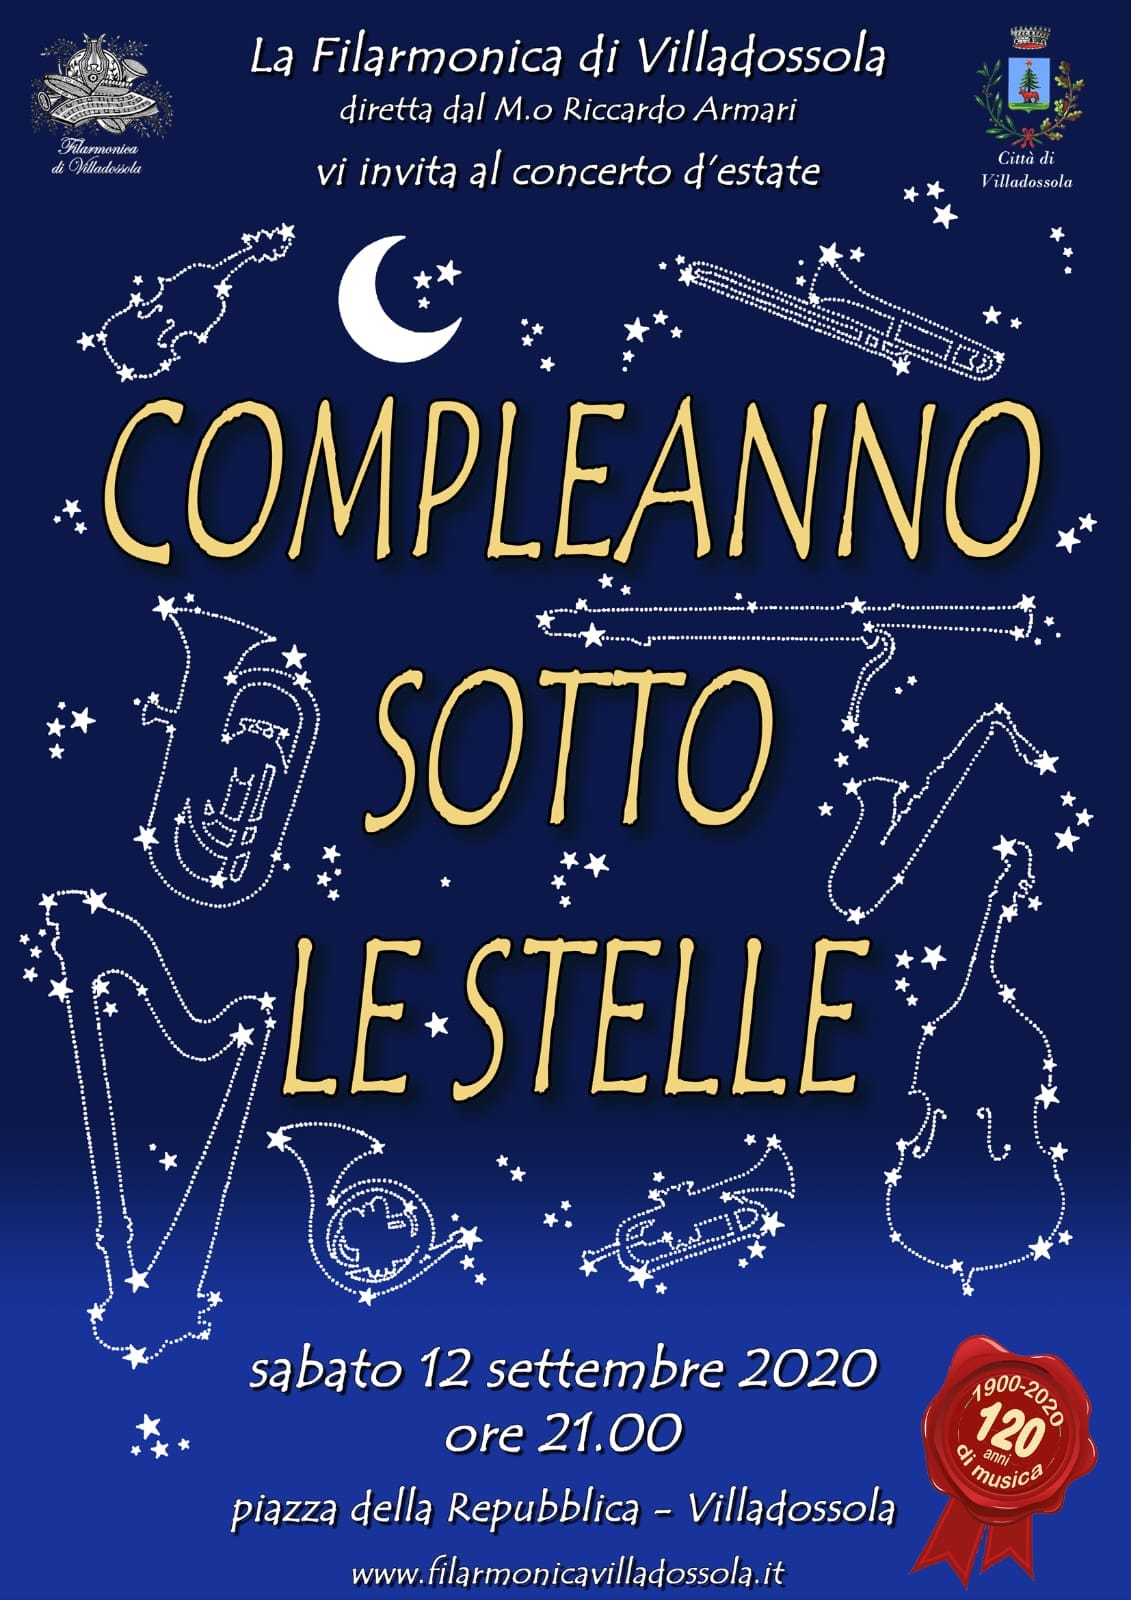 Concerto "Compleanno sotto le stelle" - Filarmonica di Villadossola